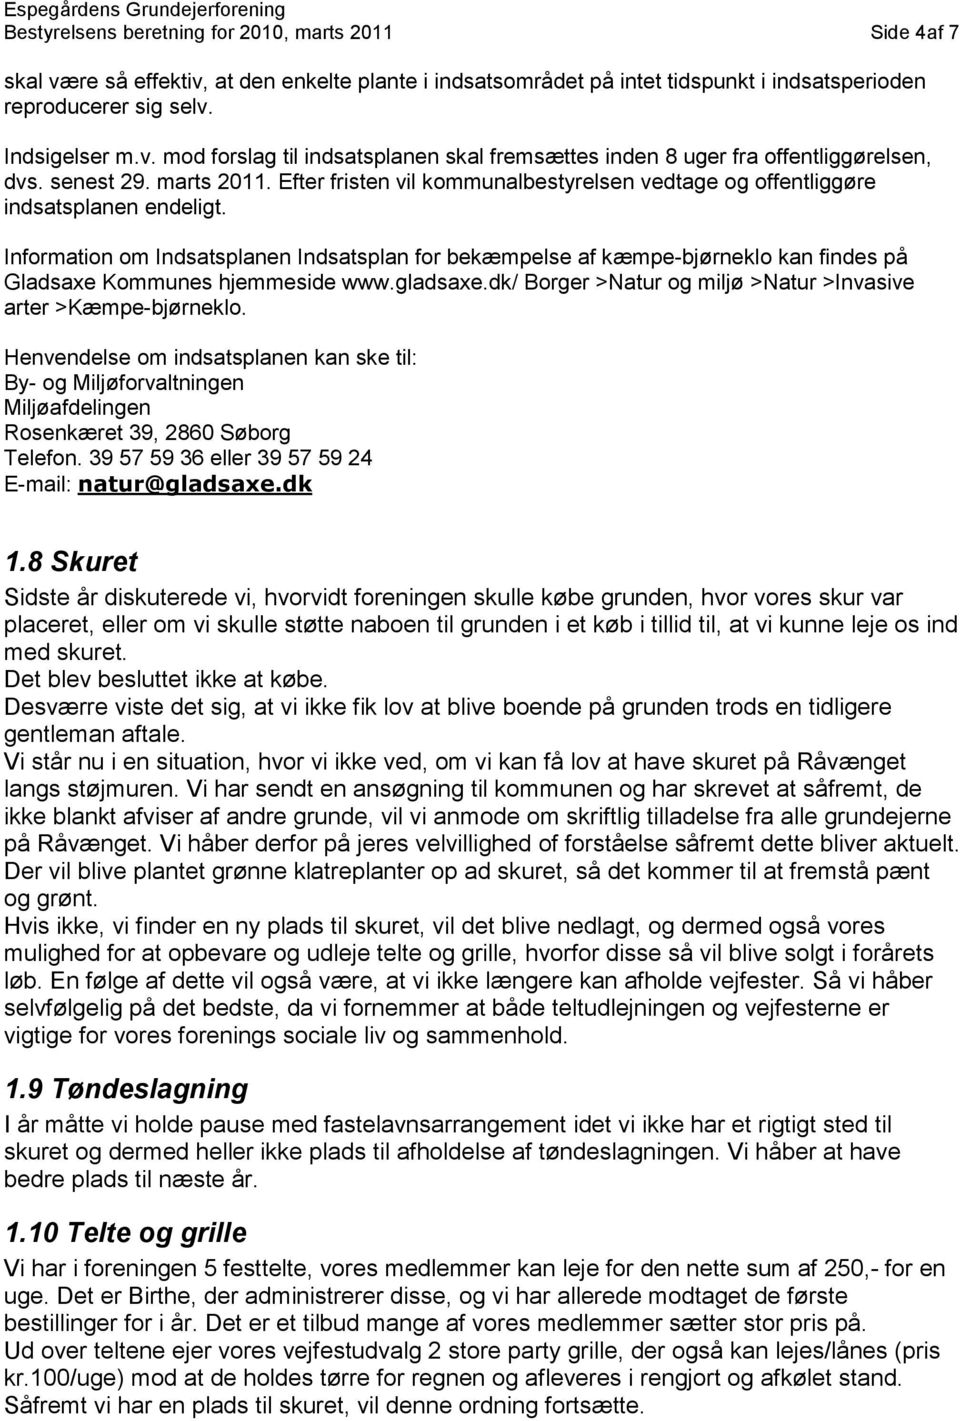 Information om Indsatsplanen Indsatsplan for bekæmpelse af kæmpe-bjørneklo kan findes på Gladsaxe Kommunes hjemmeside www.gladsaxe.dk/ Borger >Natur og miljø >Natur >Invasive arter >Kæmpe-bjørneklo.